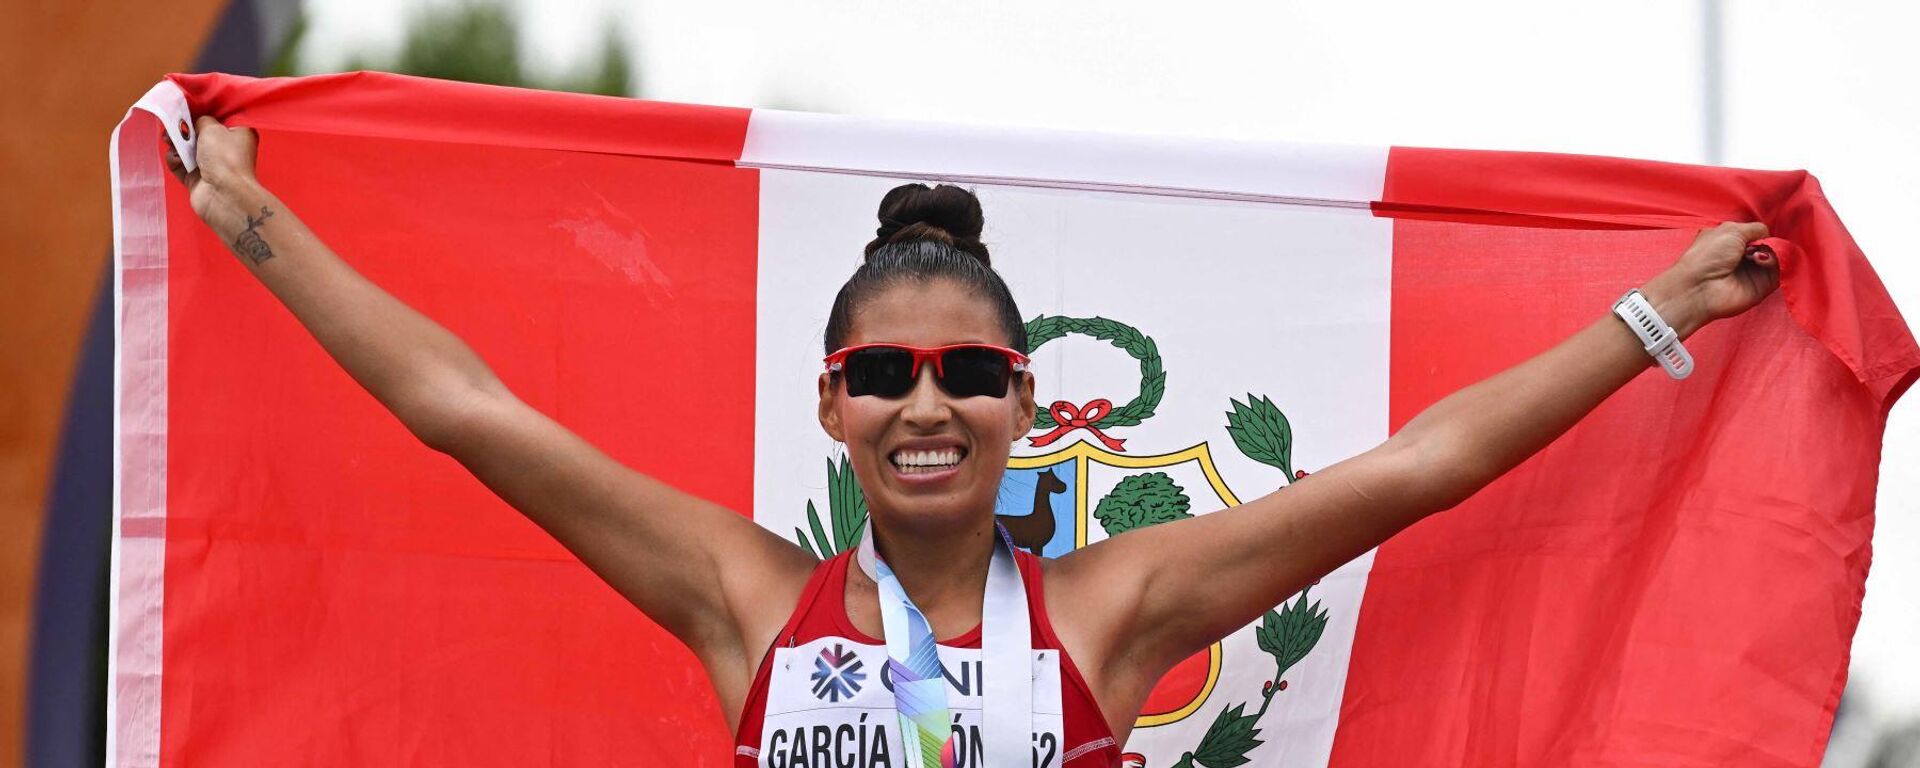 Yürüyüşte iki dünya şampiyonluğu bulunan Perulu atlet Kimberly Garcia, kadınlar 35 kilometre yarışında dünya rekoru kırdı. - Sputnik Türkiye, 1920, 26.03.2023